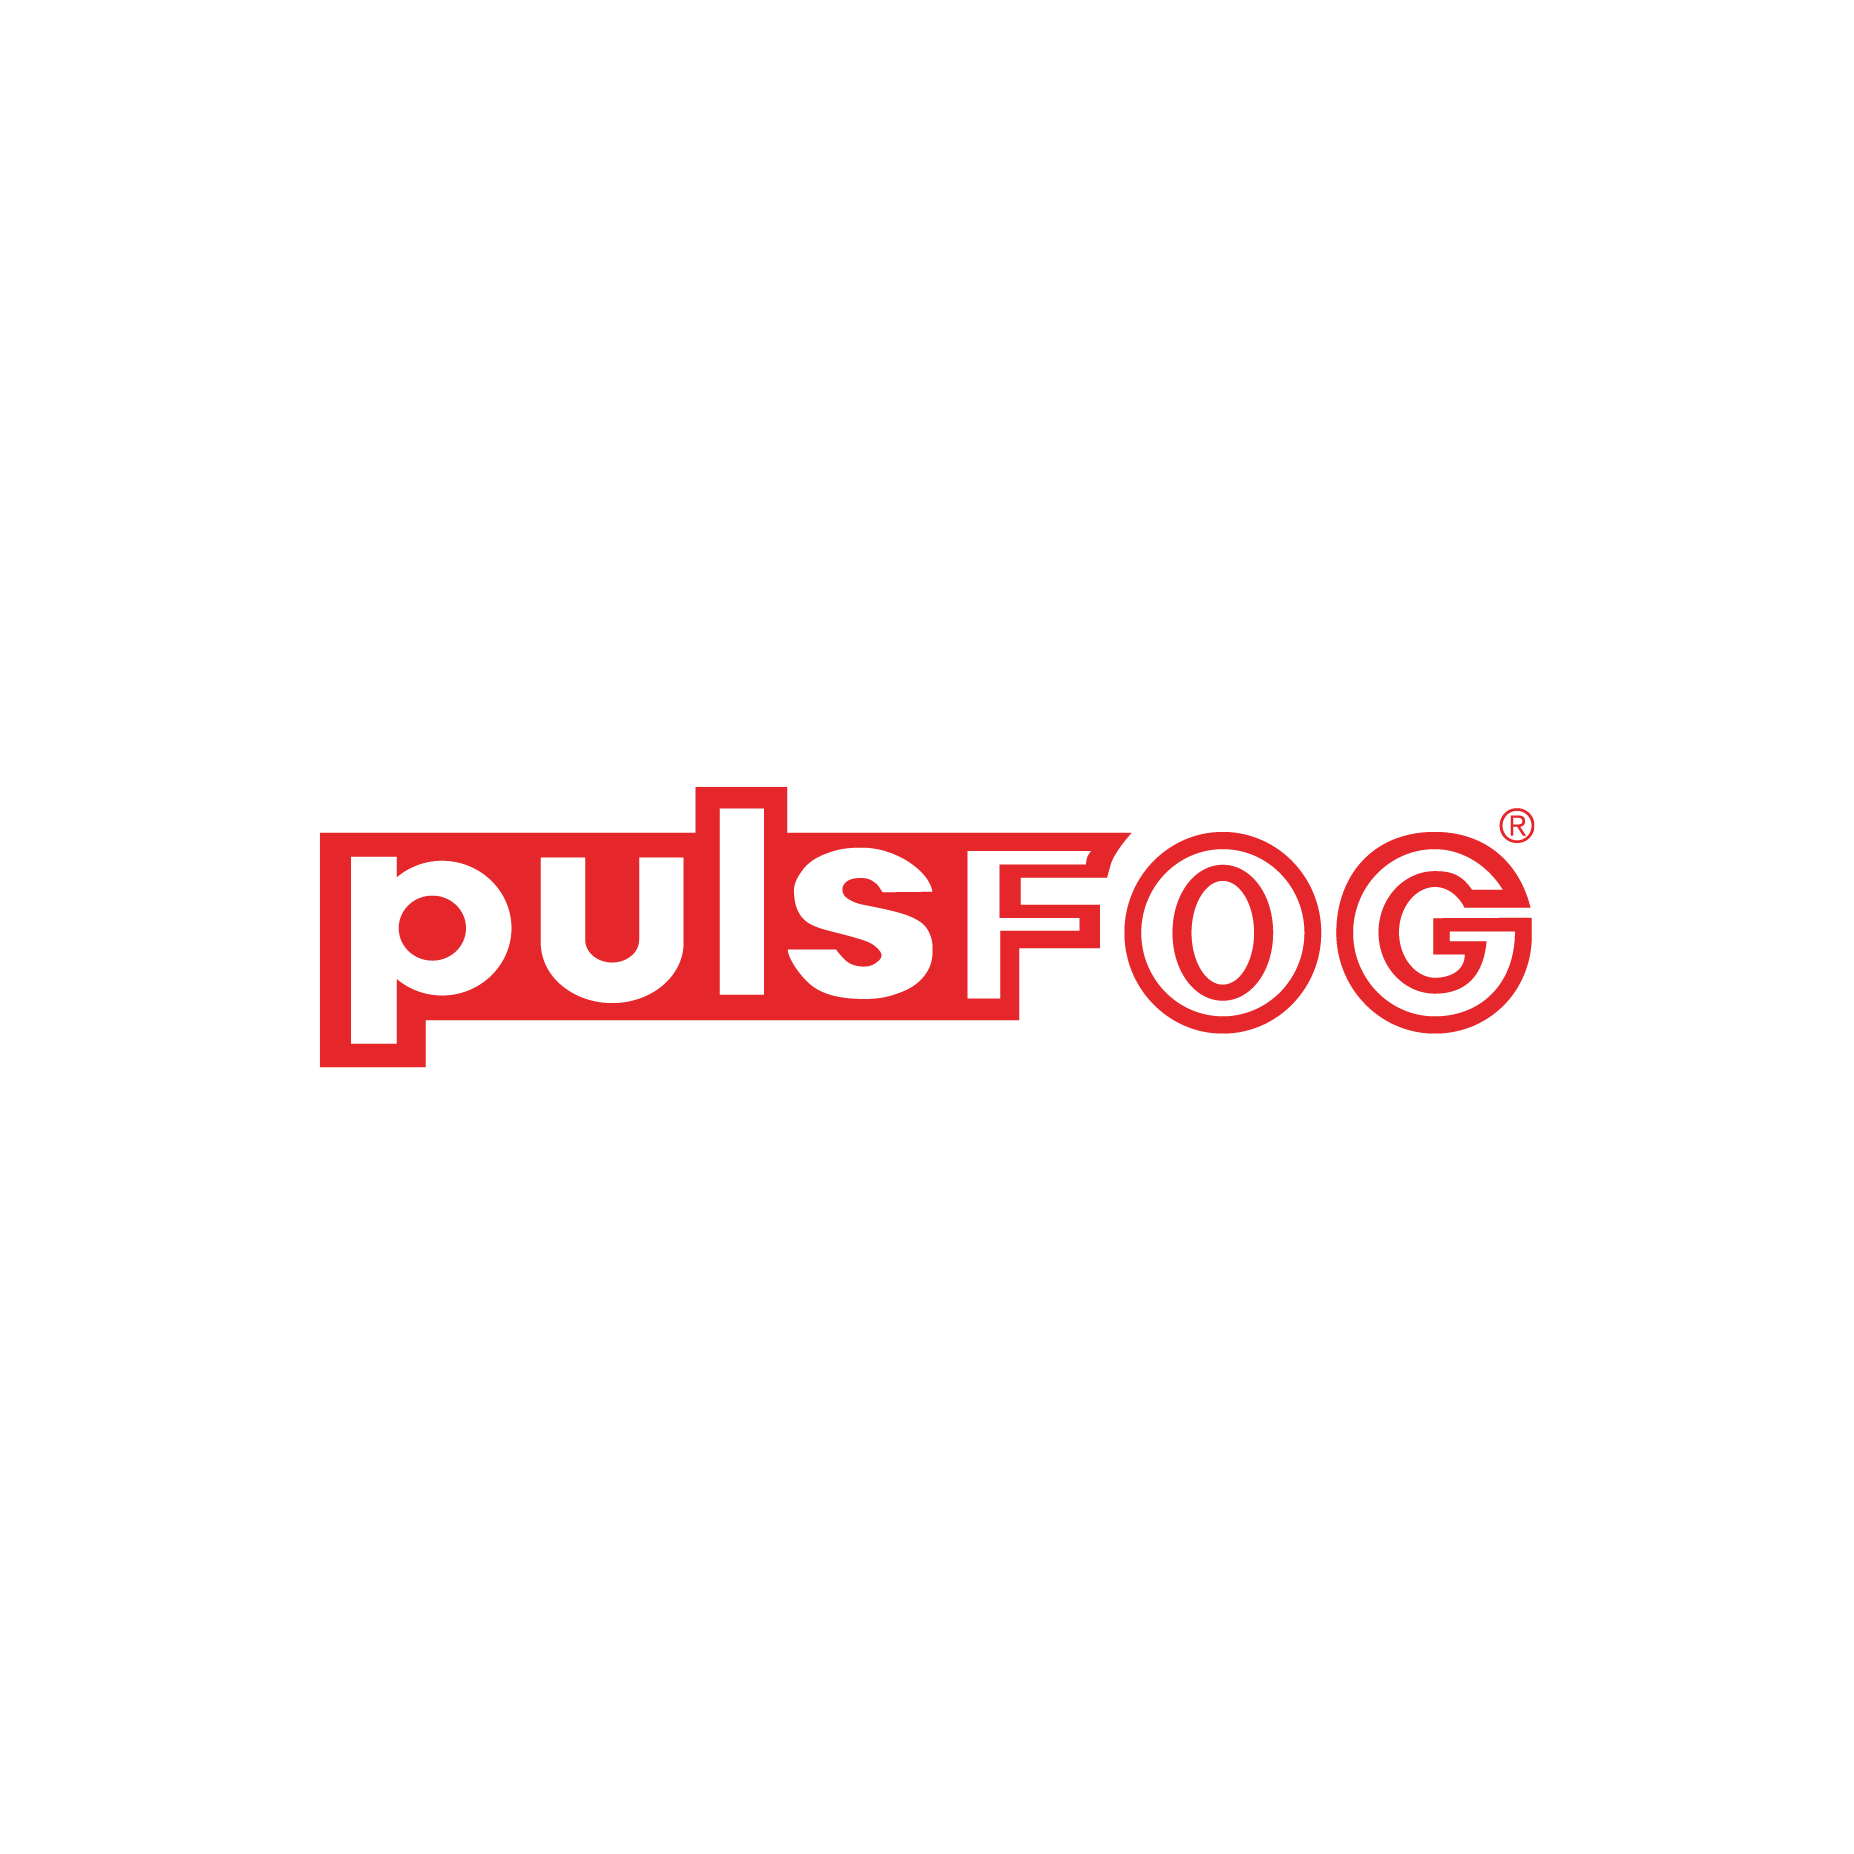 Pulsfog Logo